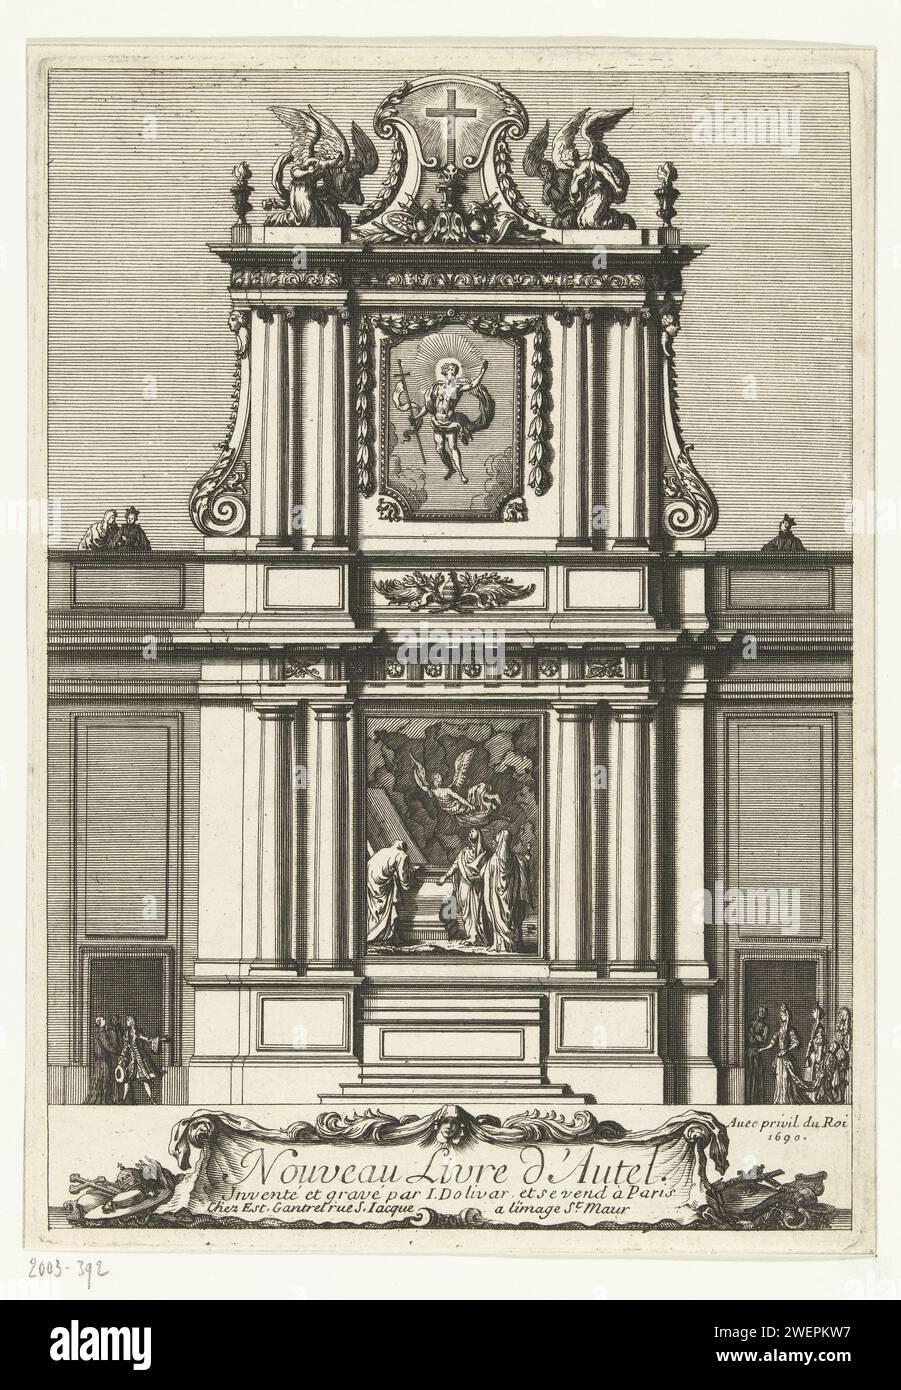 Titelblad: Neues Altarbuch, Juan Dolívar, 1690 Druck Design für Altar mit Darstellung der Auferstehung Christi. Papierätzung Stockfoto